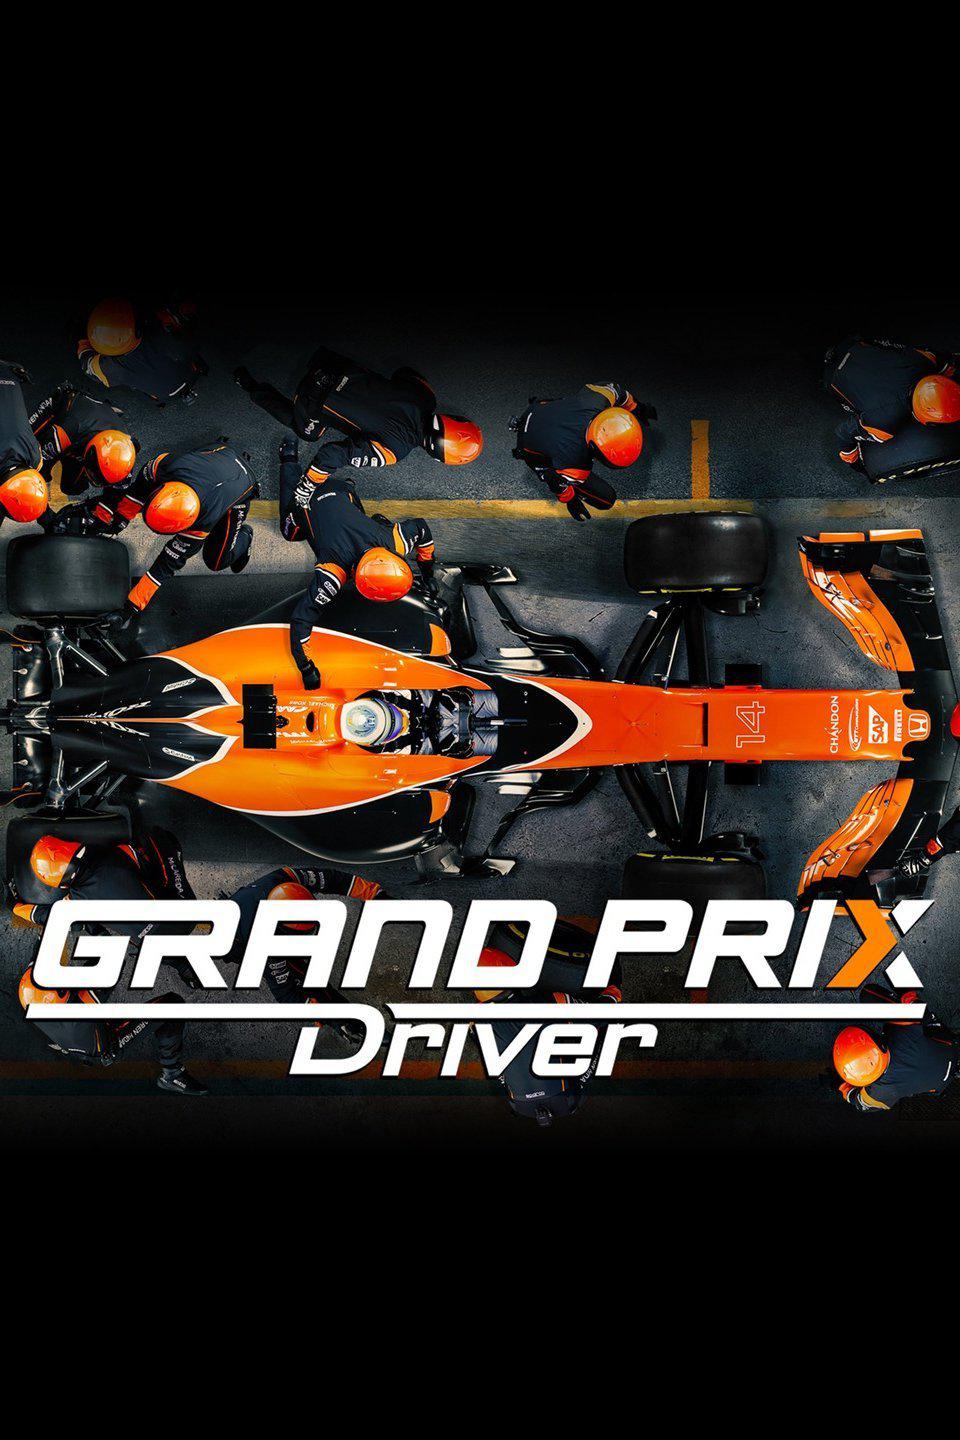 TV ratings for Grand Prix Driver in Corea del Sur. Amazon Prime Video TV series